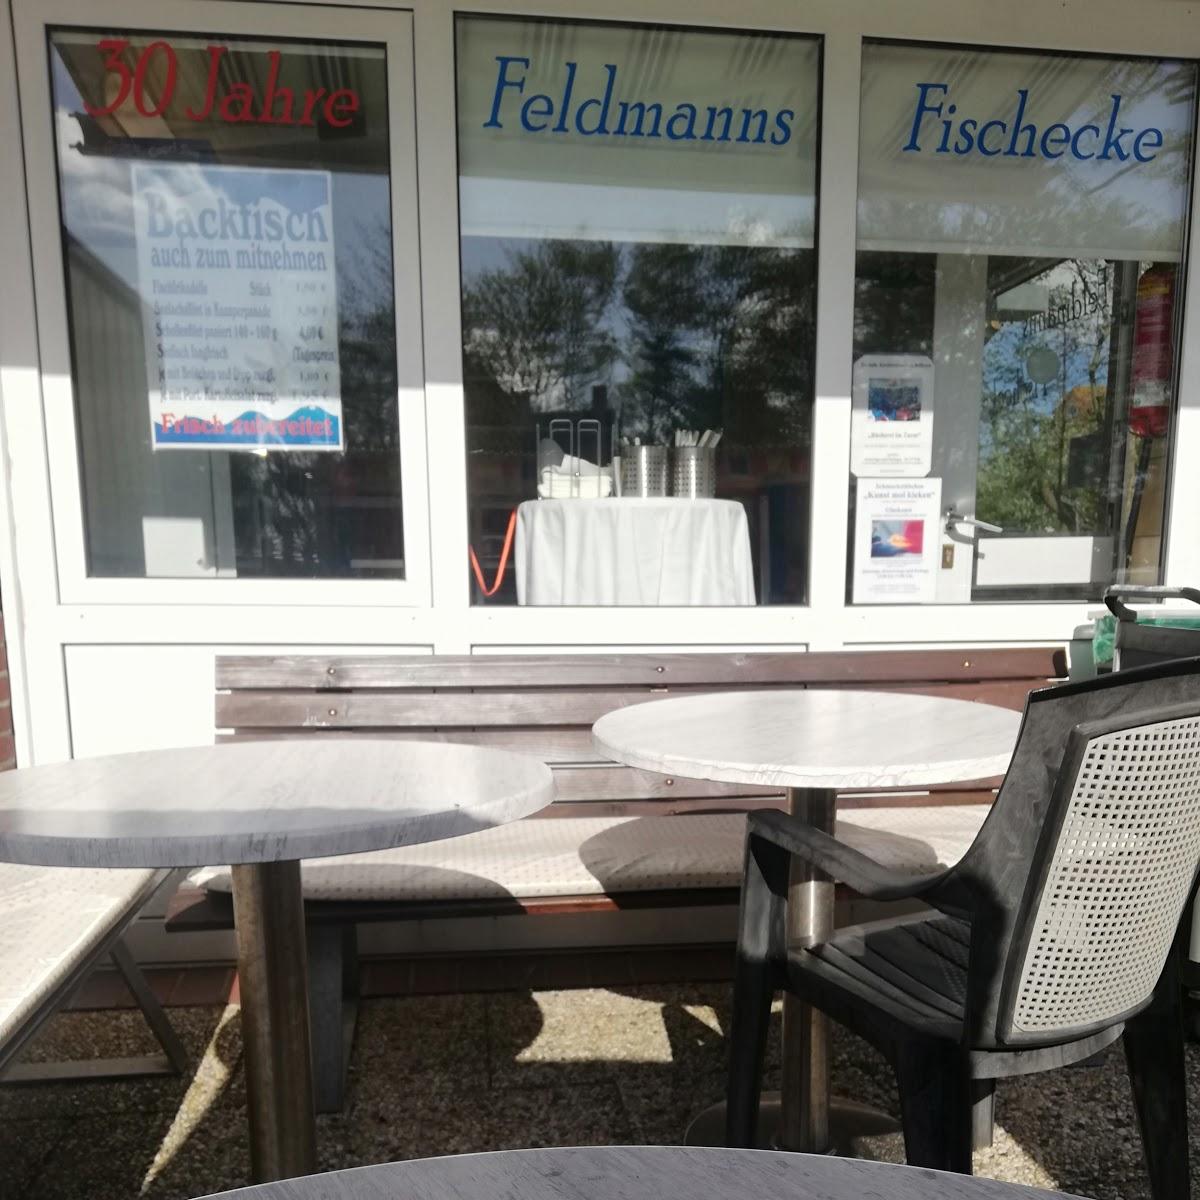 Restaurant "Feldmanns Fischecke" in Baltrum